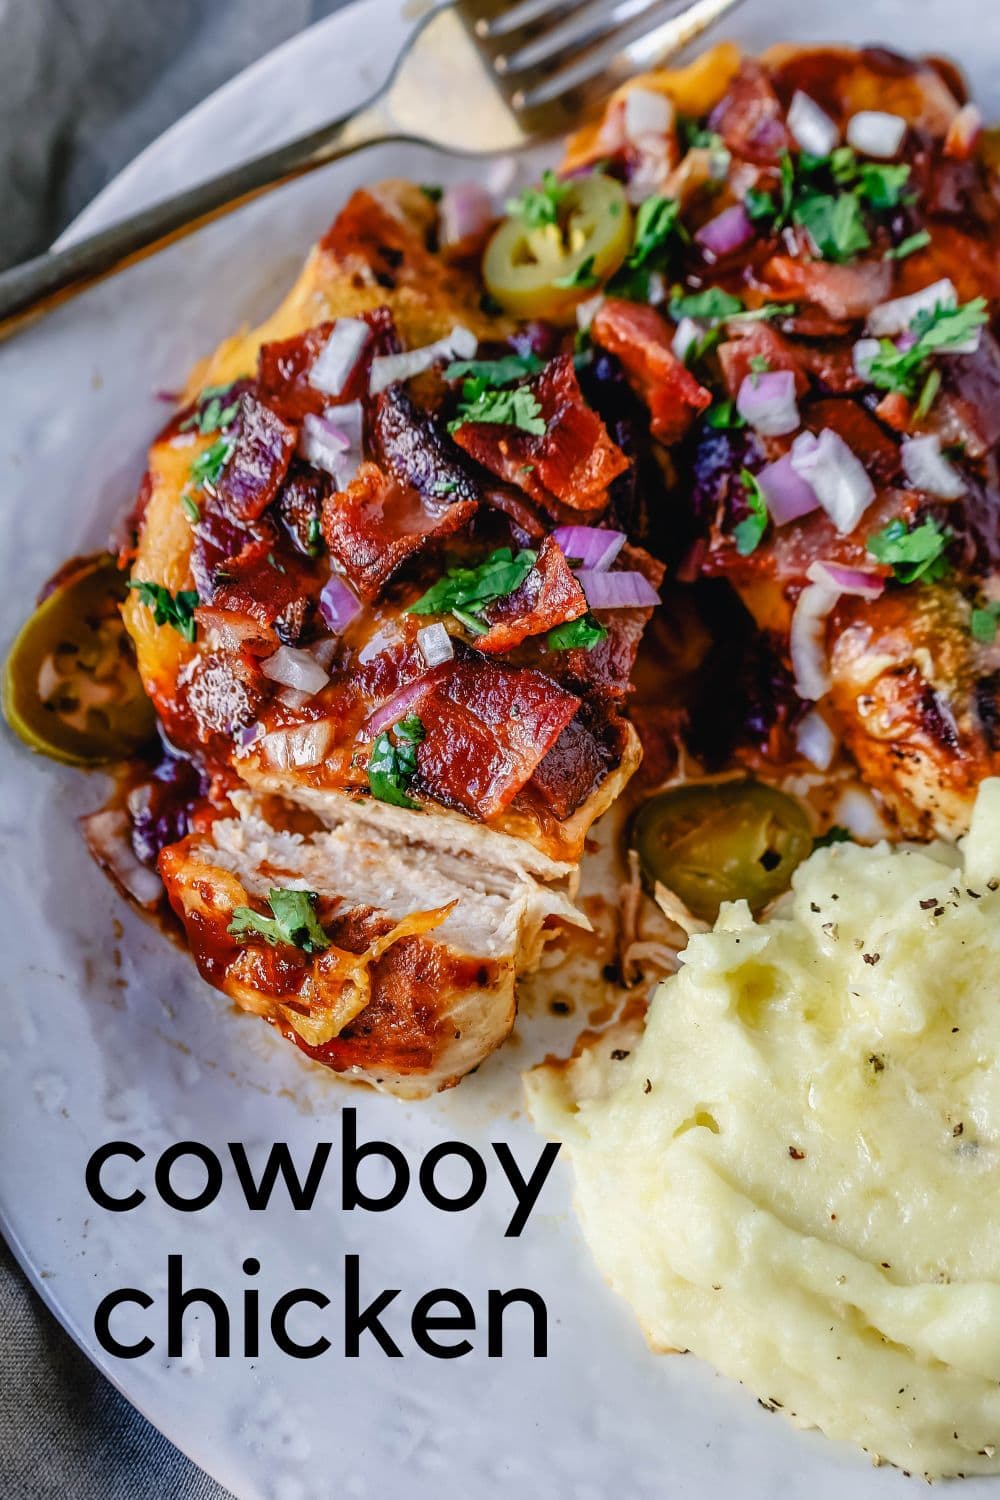 Αυτό το κοτόπουλο Cowboy είναι μαριναρισμένο ψητό κοτόπουλο με μπάρμπεκιου σάλτσα, τραγανό μπέικον και τυρί τσένταρ.  Από πάνω με φρέσκο ​​κόλιανδρο και κόκκινο κρεμμύδι.  Αυτή είναι η καλύτερη συνταγή για κοτόπουλο Monterey!